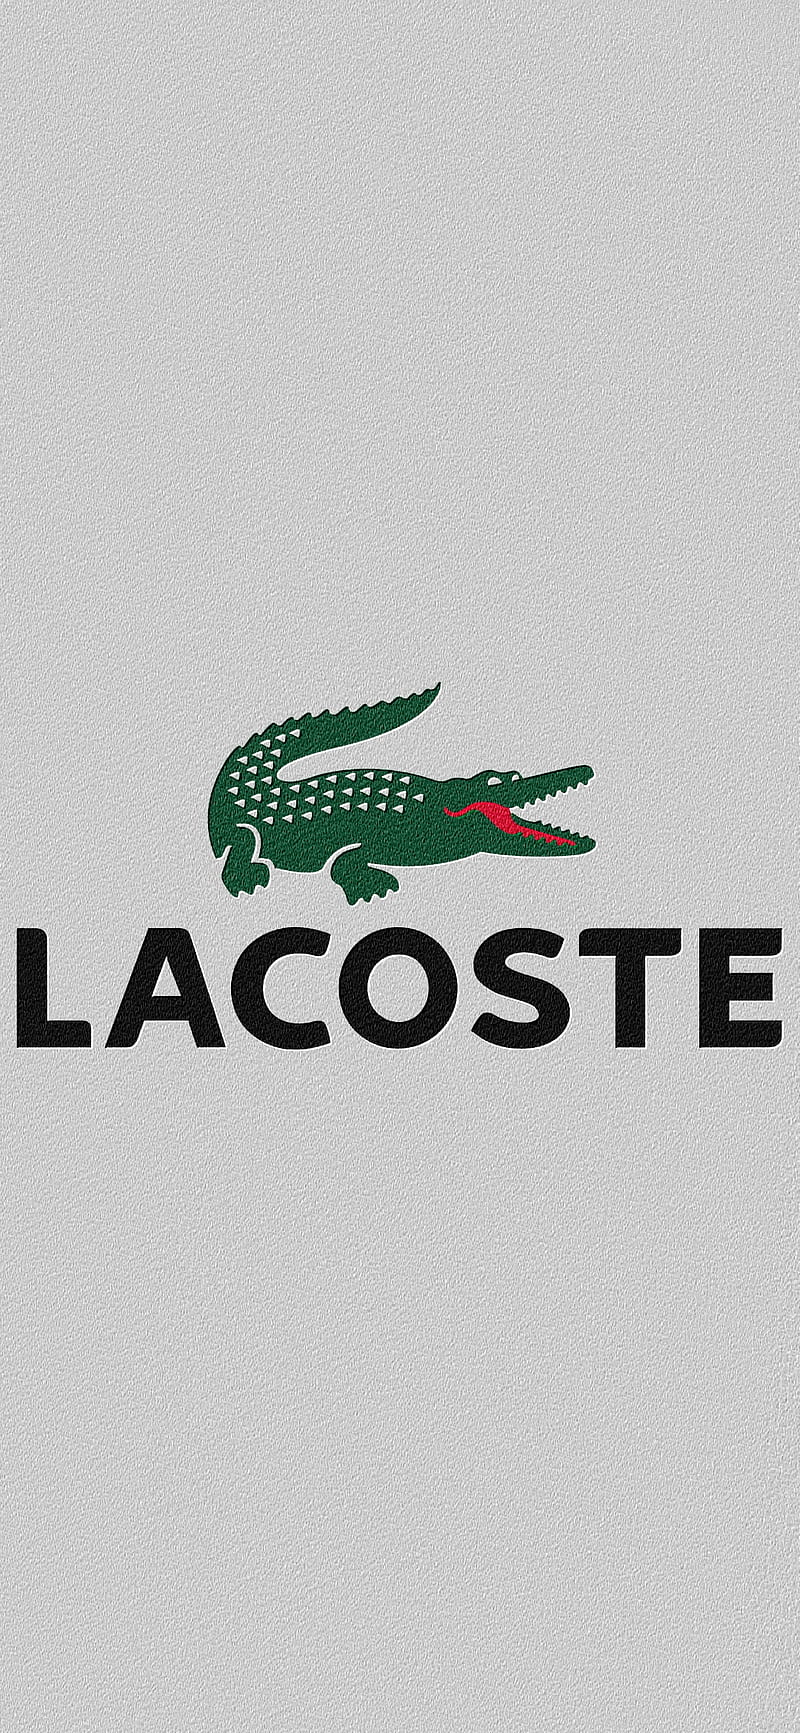 Lacoste Brand Famous Marca Jersey Logo Hd Phone Wallpaper Peakpx